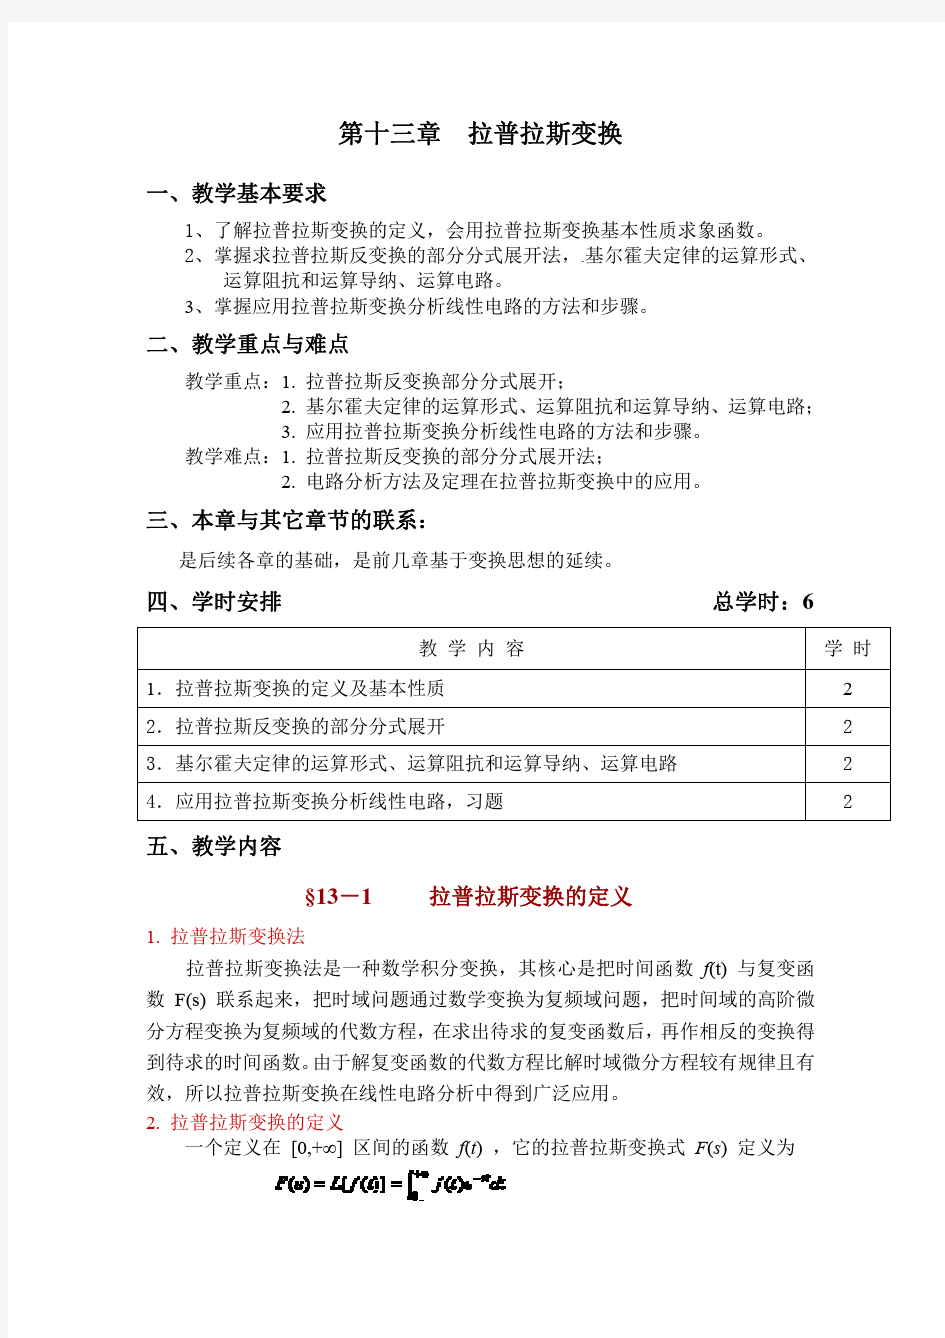 13-第十三章-拉普拉斯变换-电路PDF教案-天津科技大学